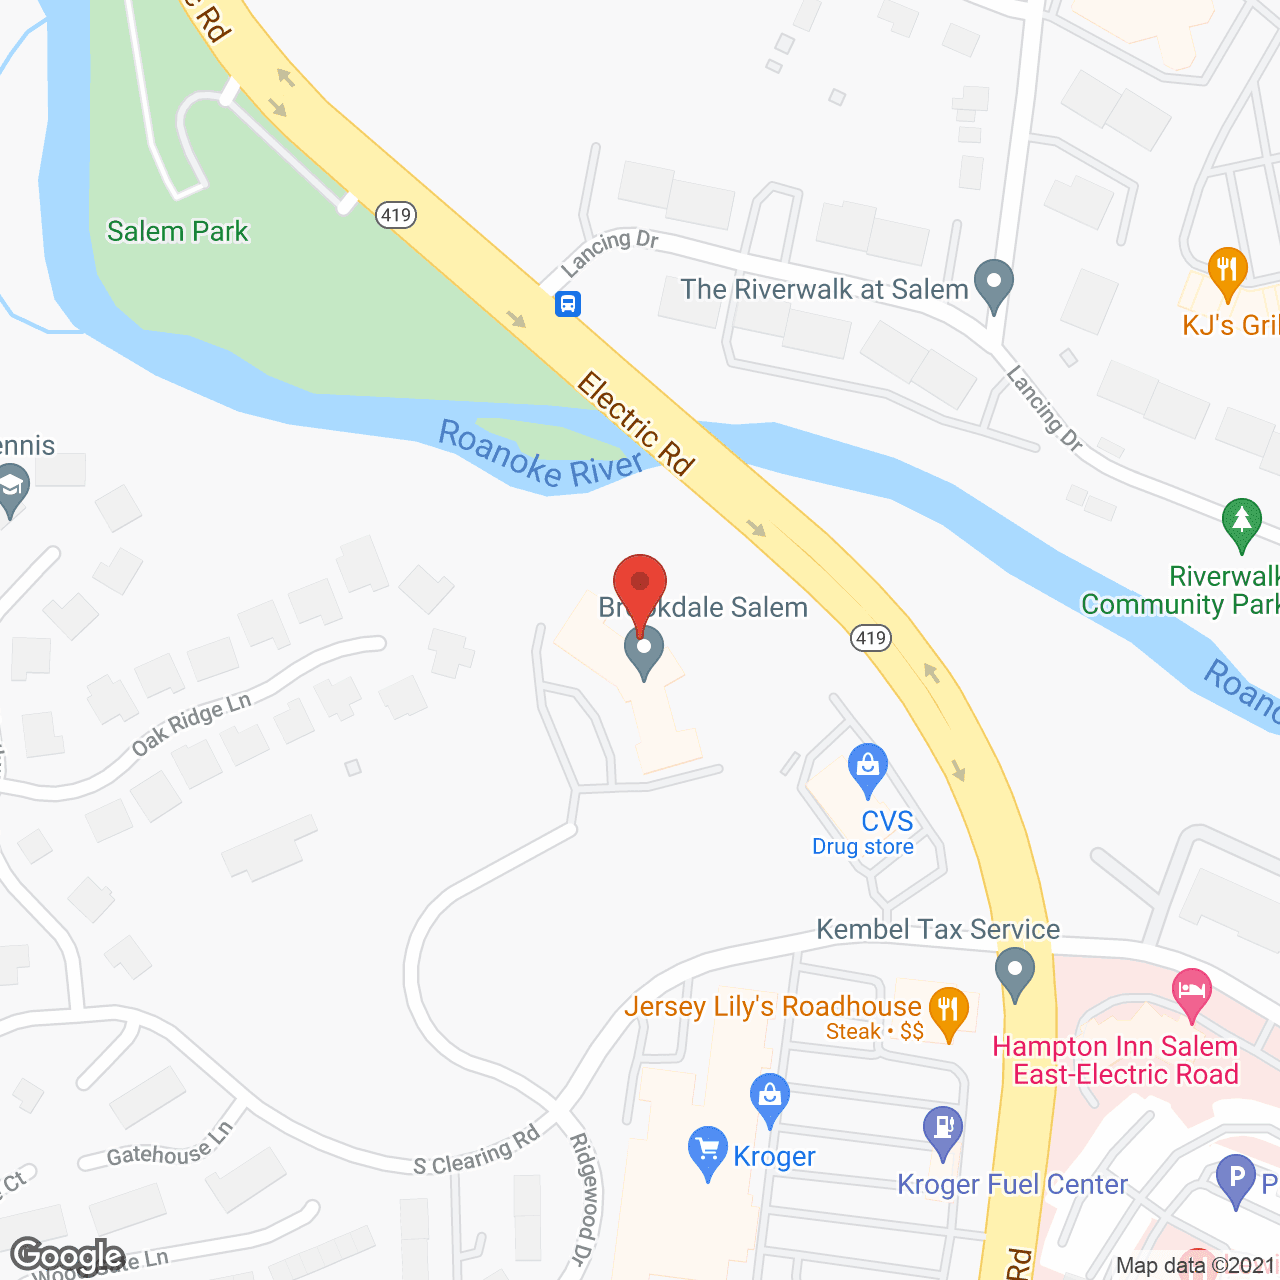 Brookdale Salem in google map